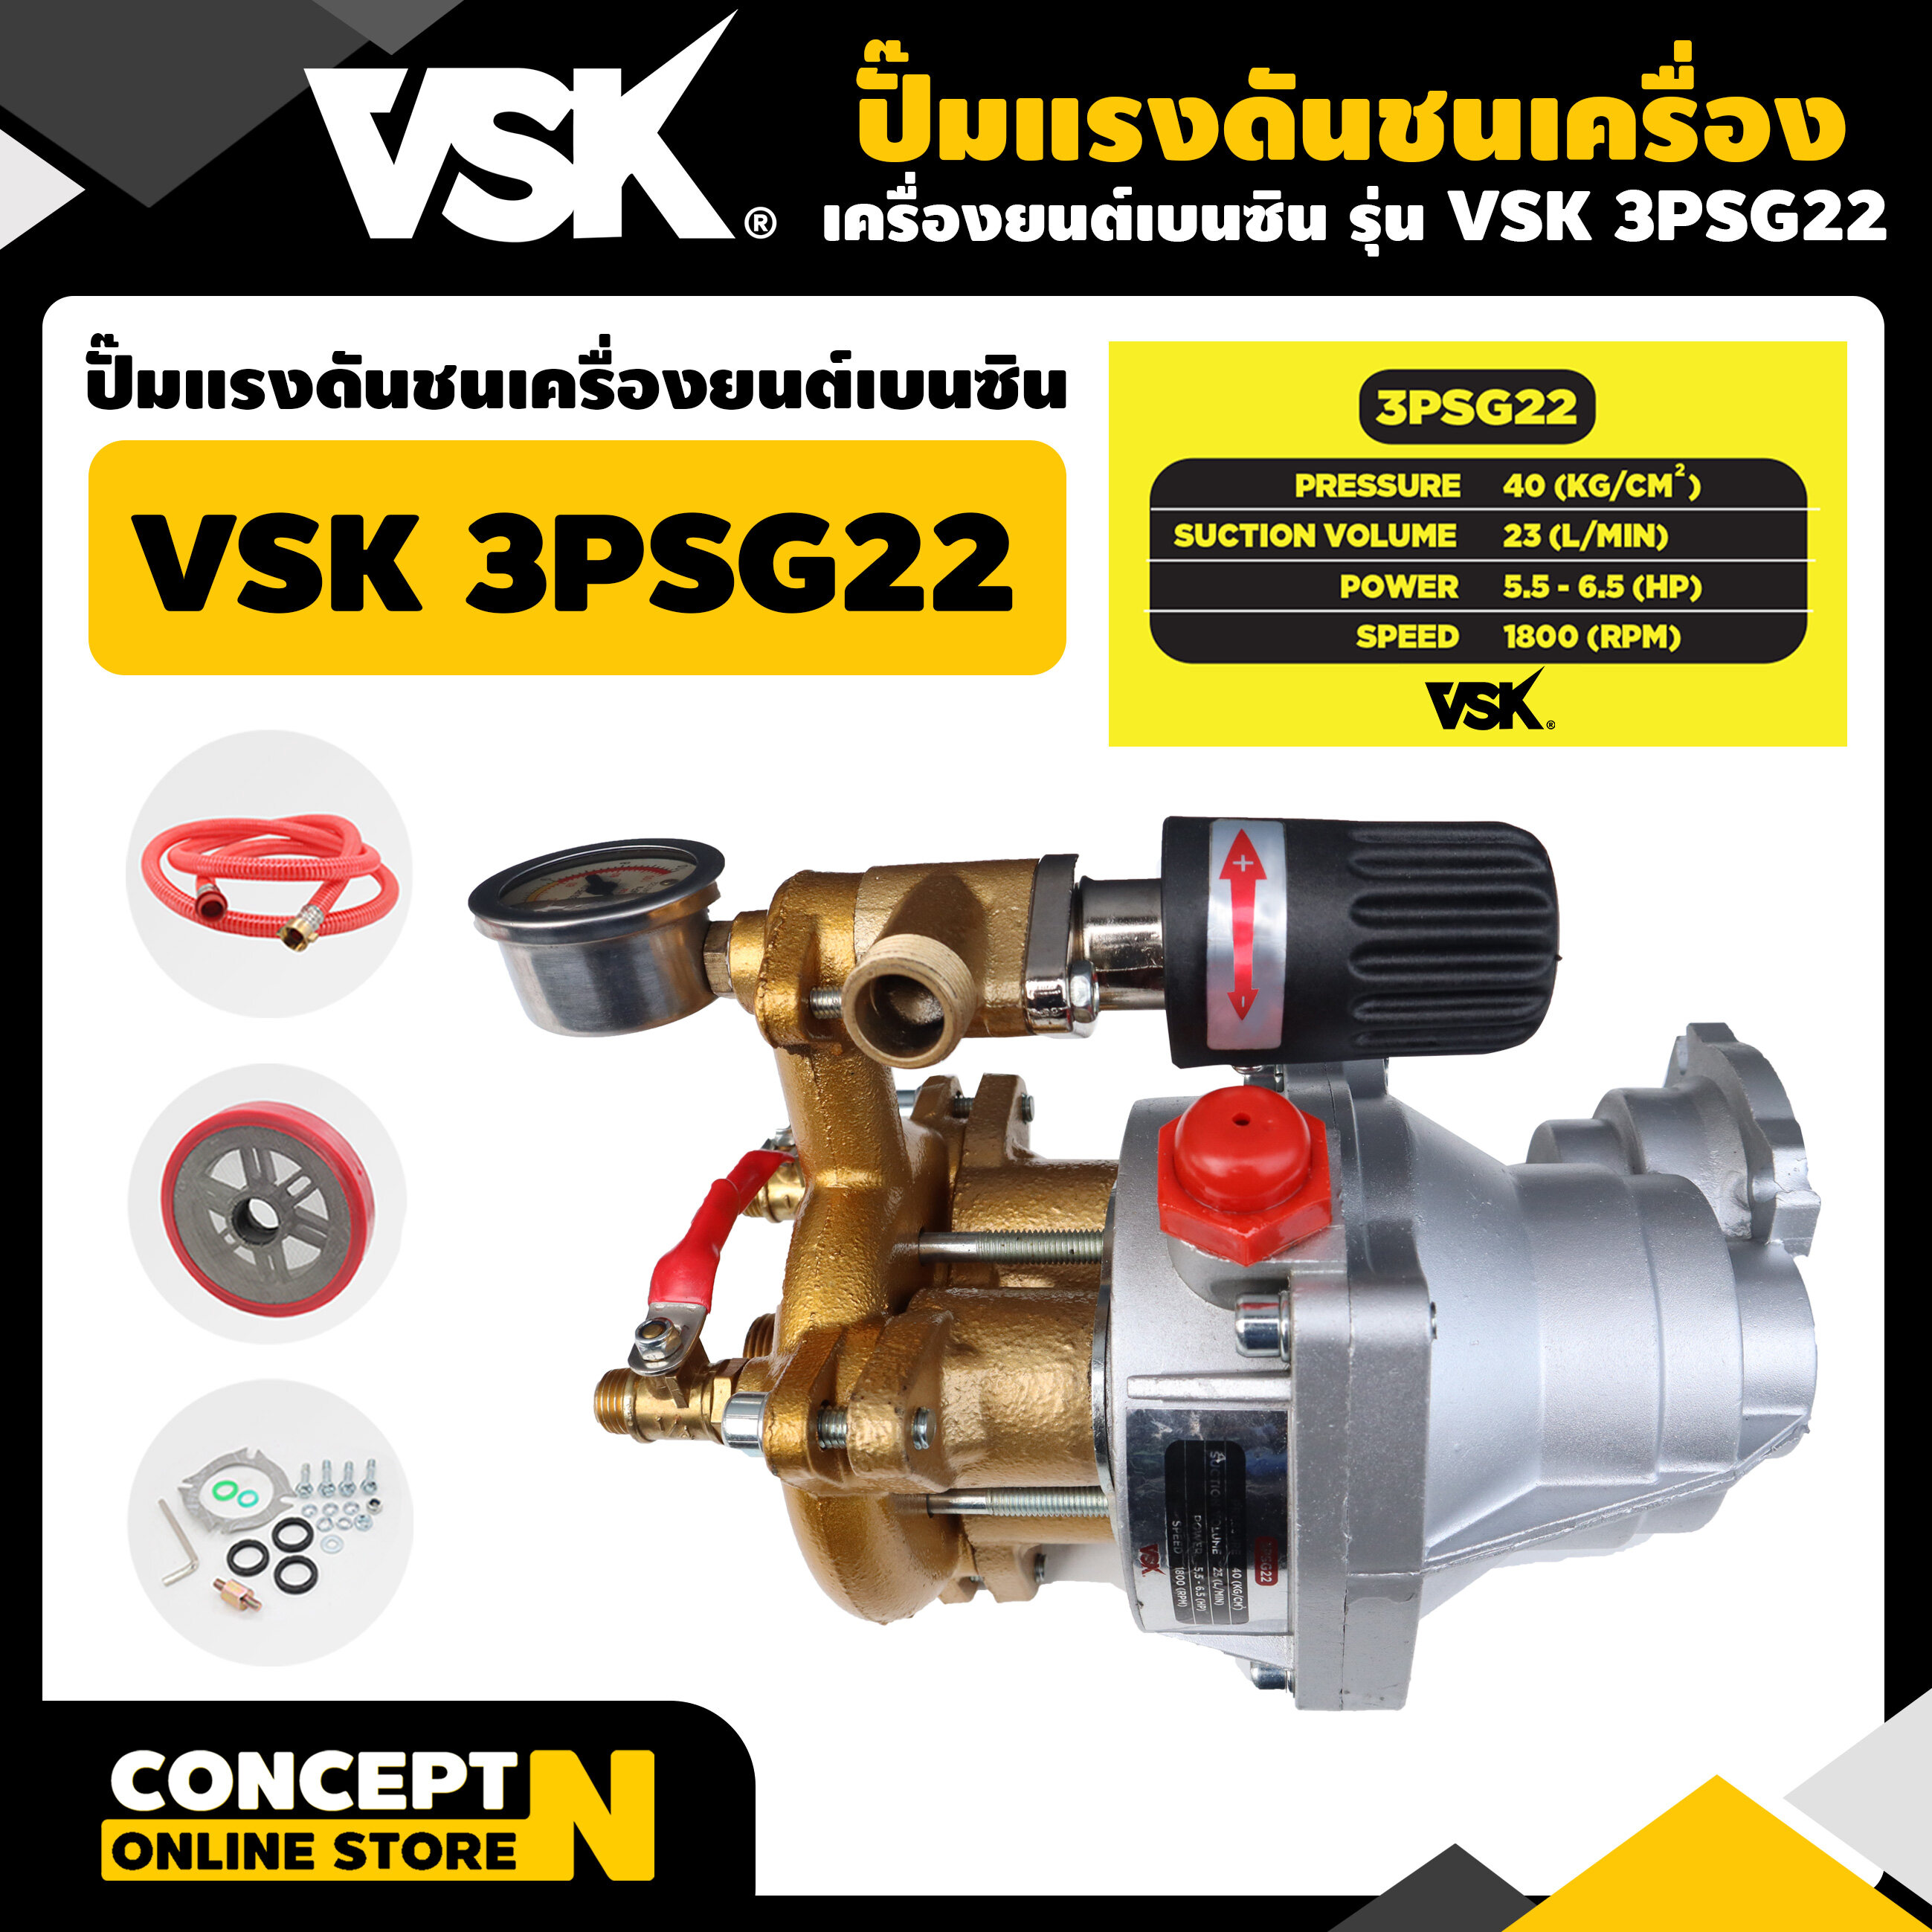 ปั๊มแรงดันชนเครื่องยนต์เบนซิน VSK 3PSG22 ประกัน 3 เดือน สินค้ามาตรฐาน Concept N